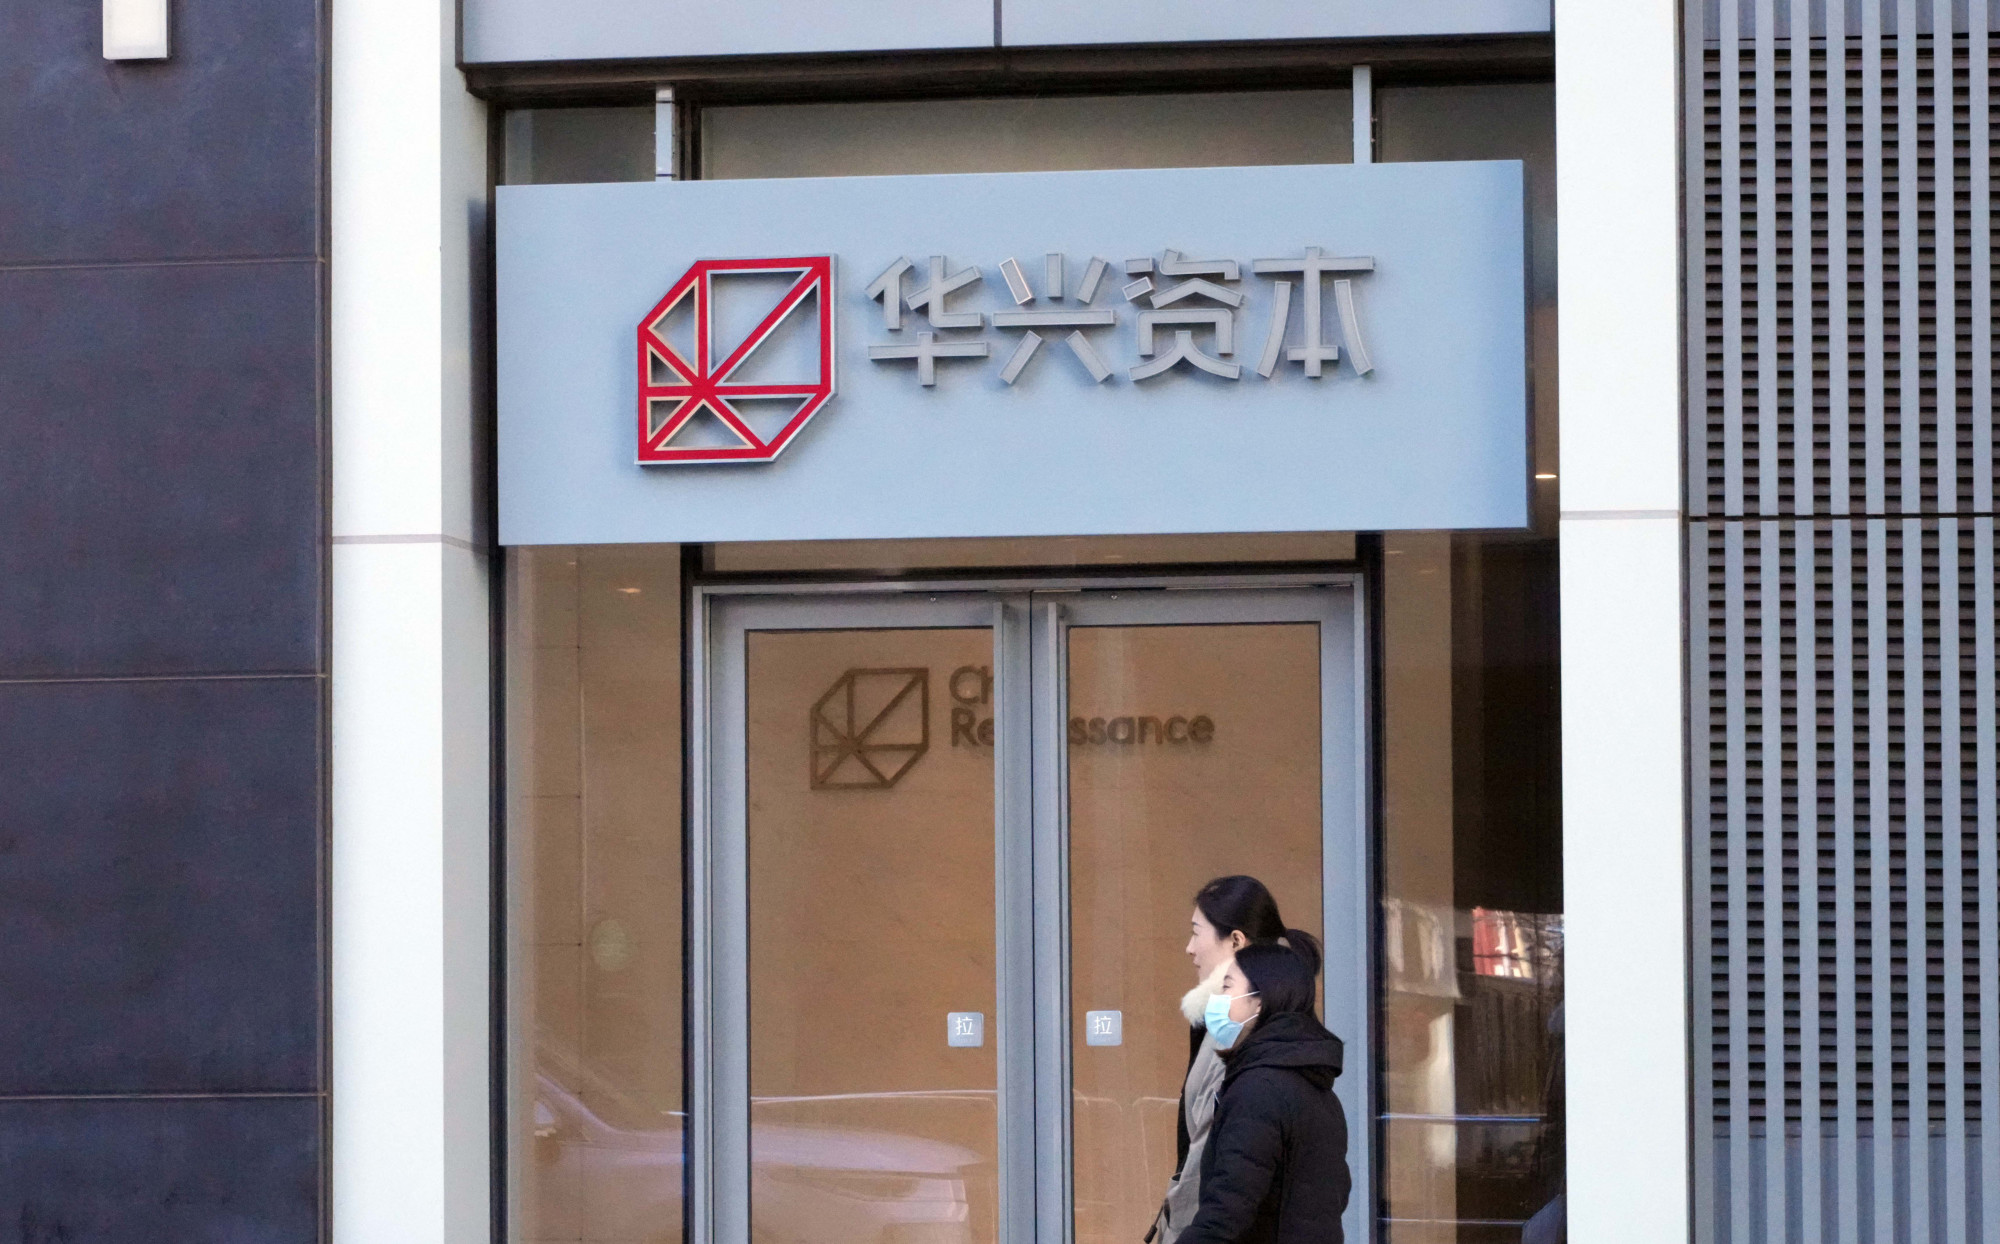 A távolból mindenről lemondott az egy éve eltűnt kínai milliárdos bankár